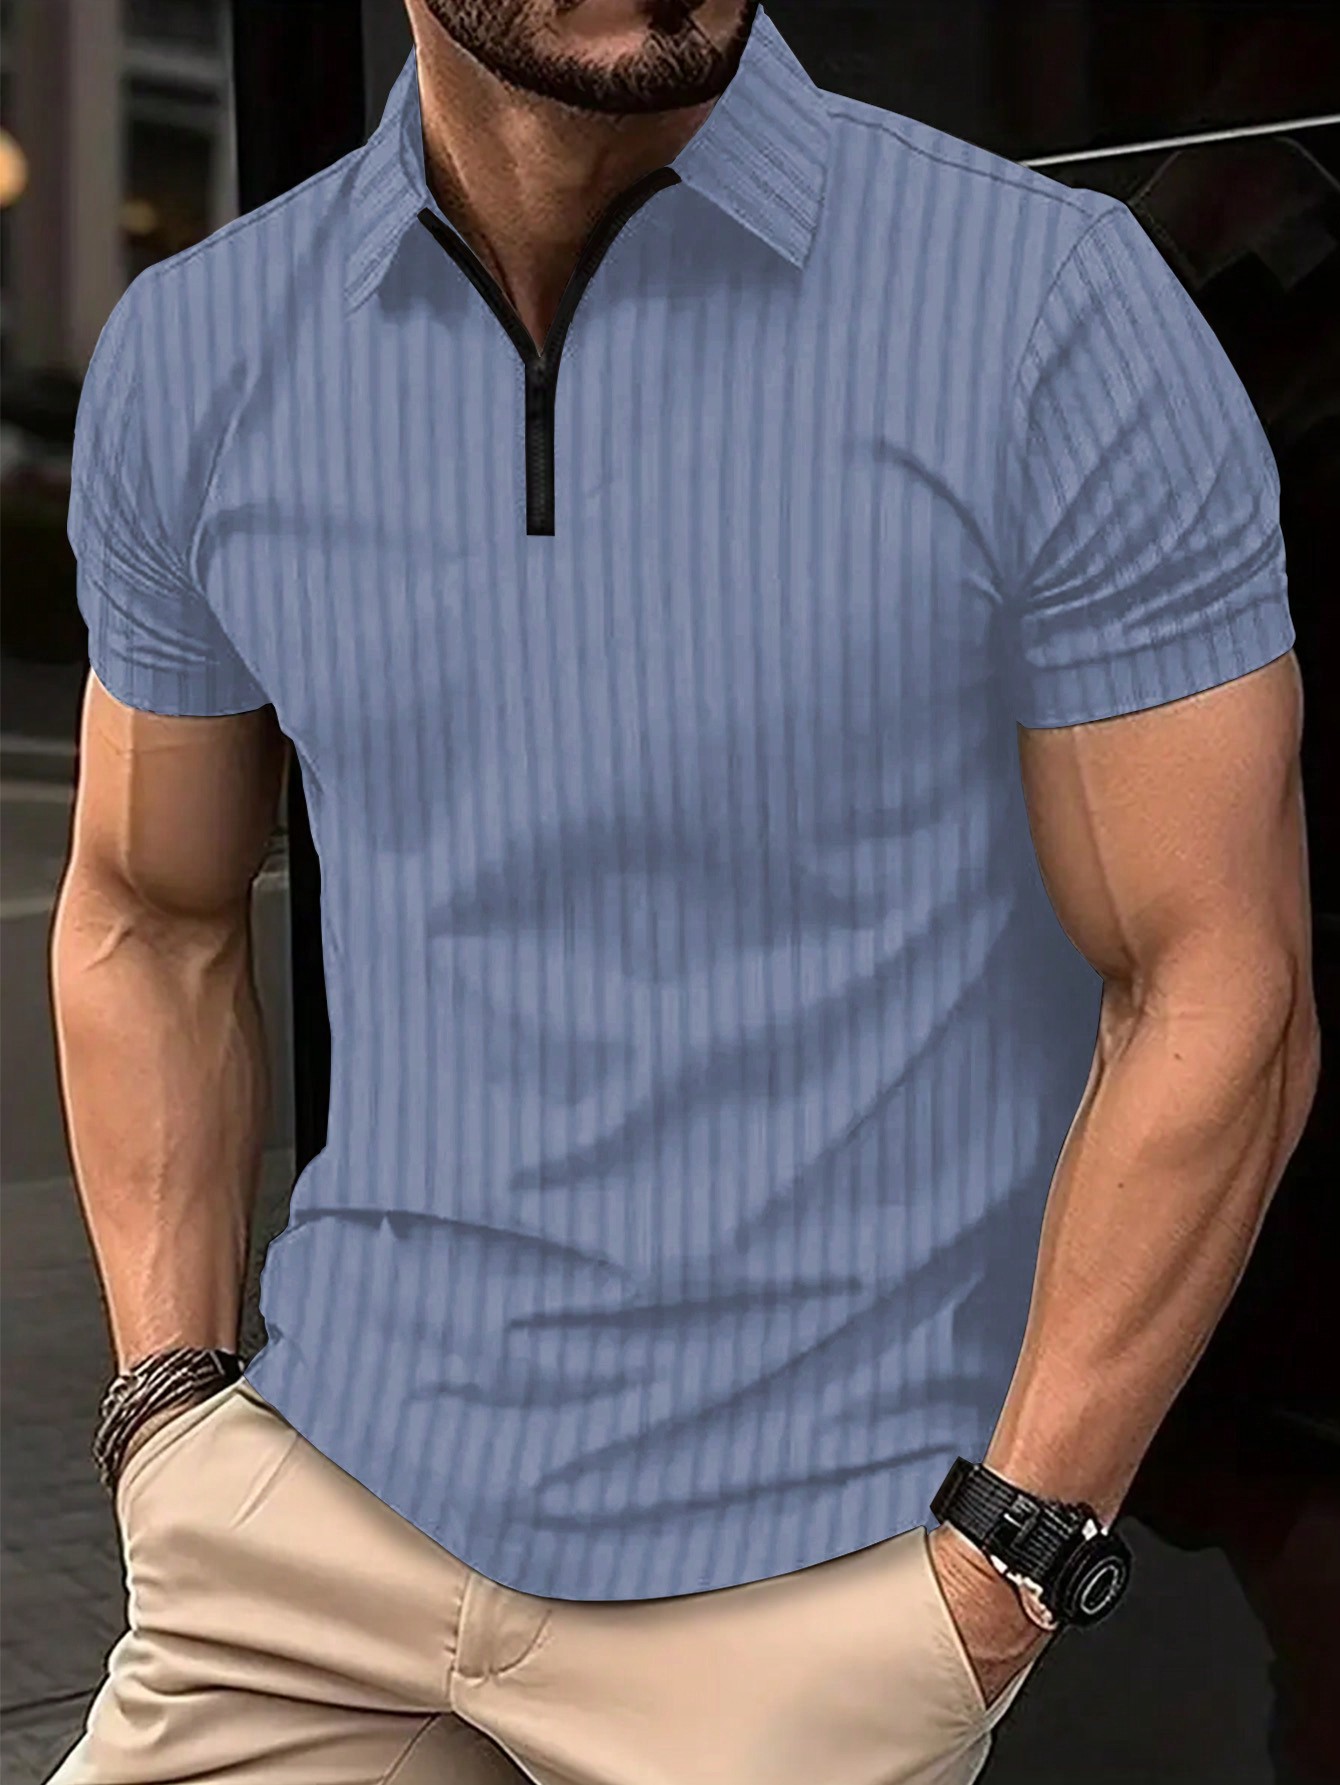 Мужская полосатая рубашка-поло с молнией до половины и короткими рукавами Manfinity Homme больших размеров, голубые кардиган в полоску с короткими рукавами